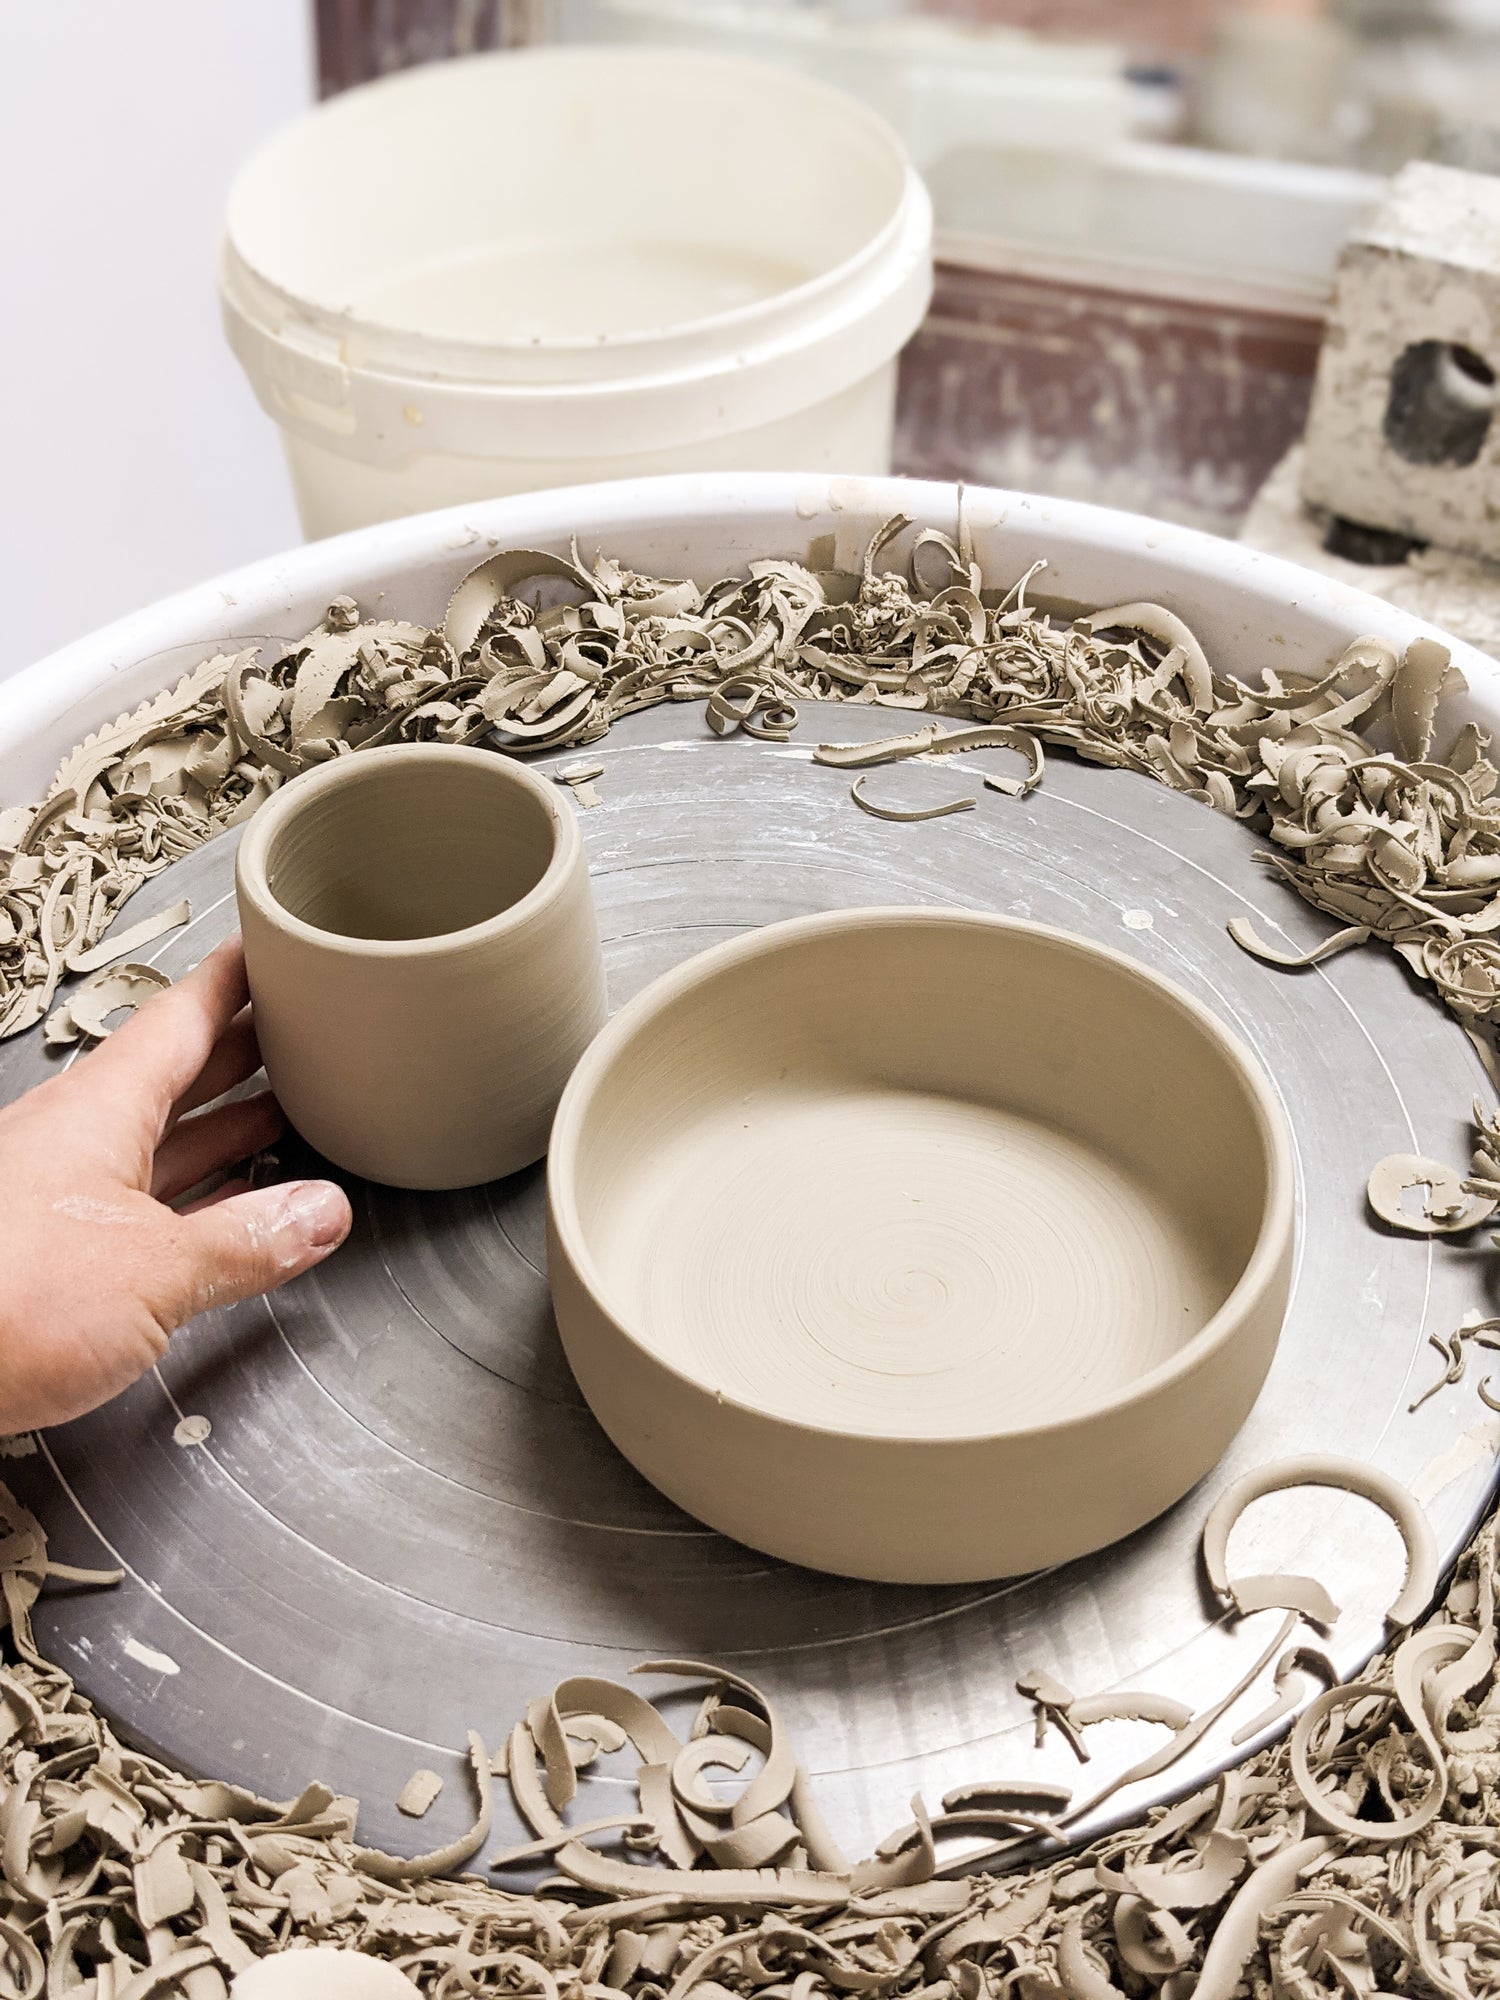 Atelier privé d’initiation à la poterie